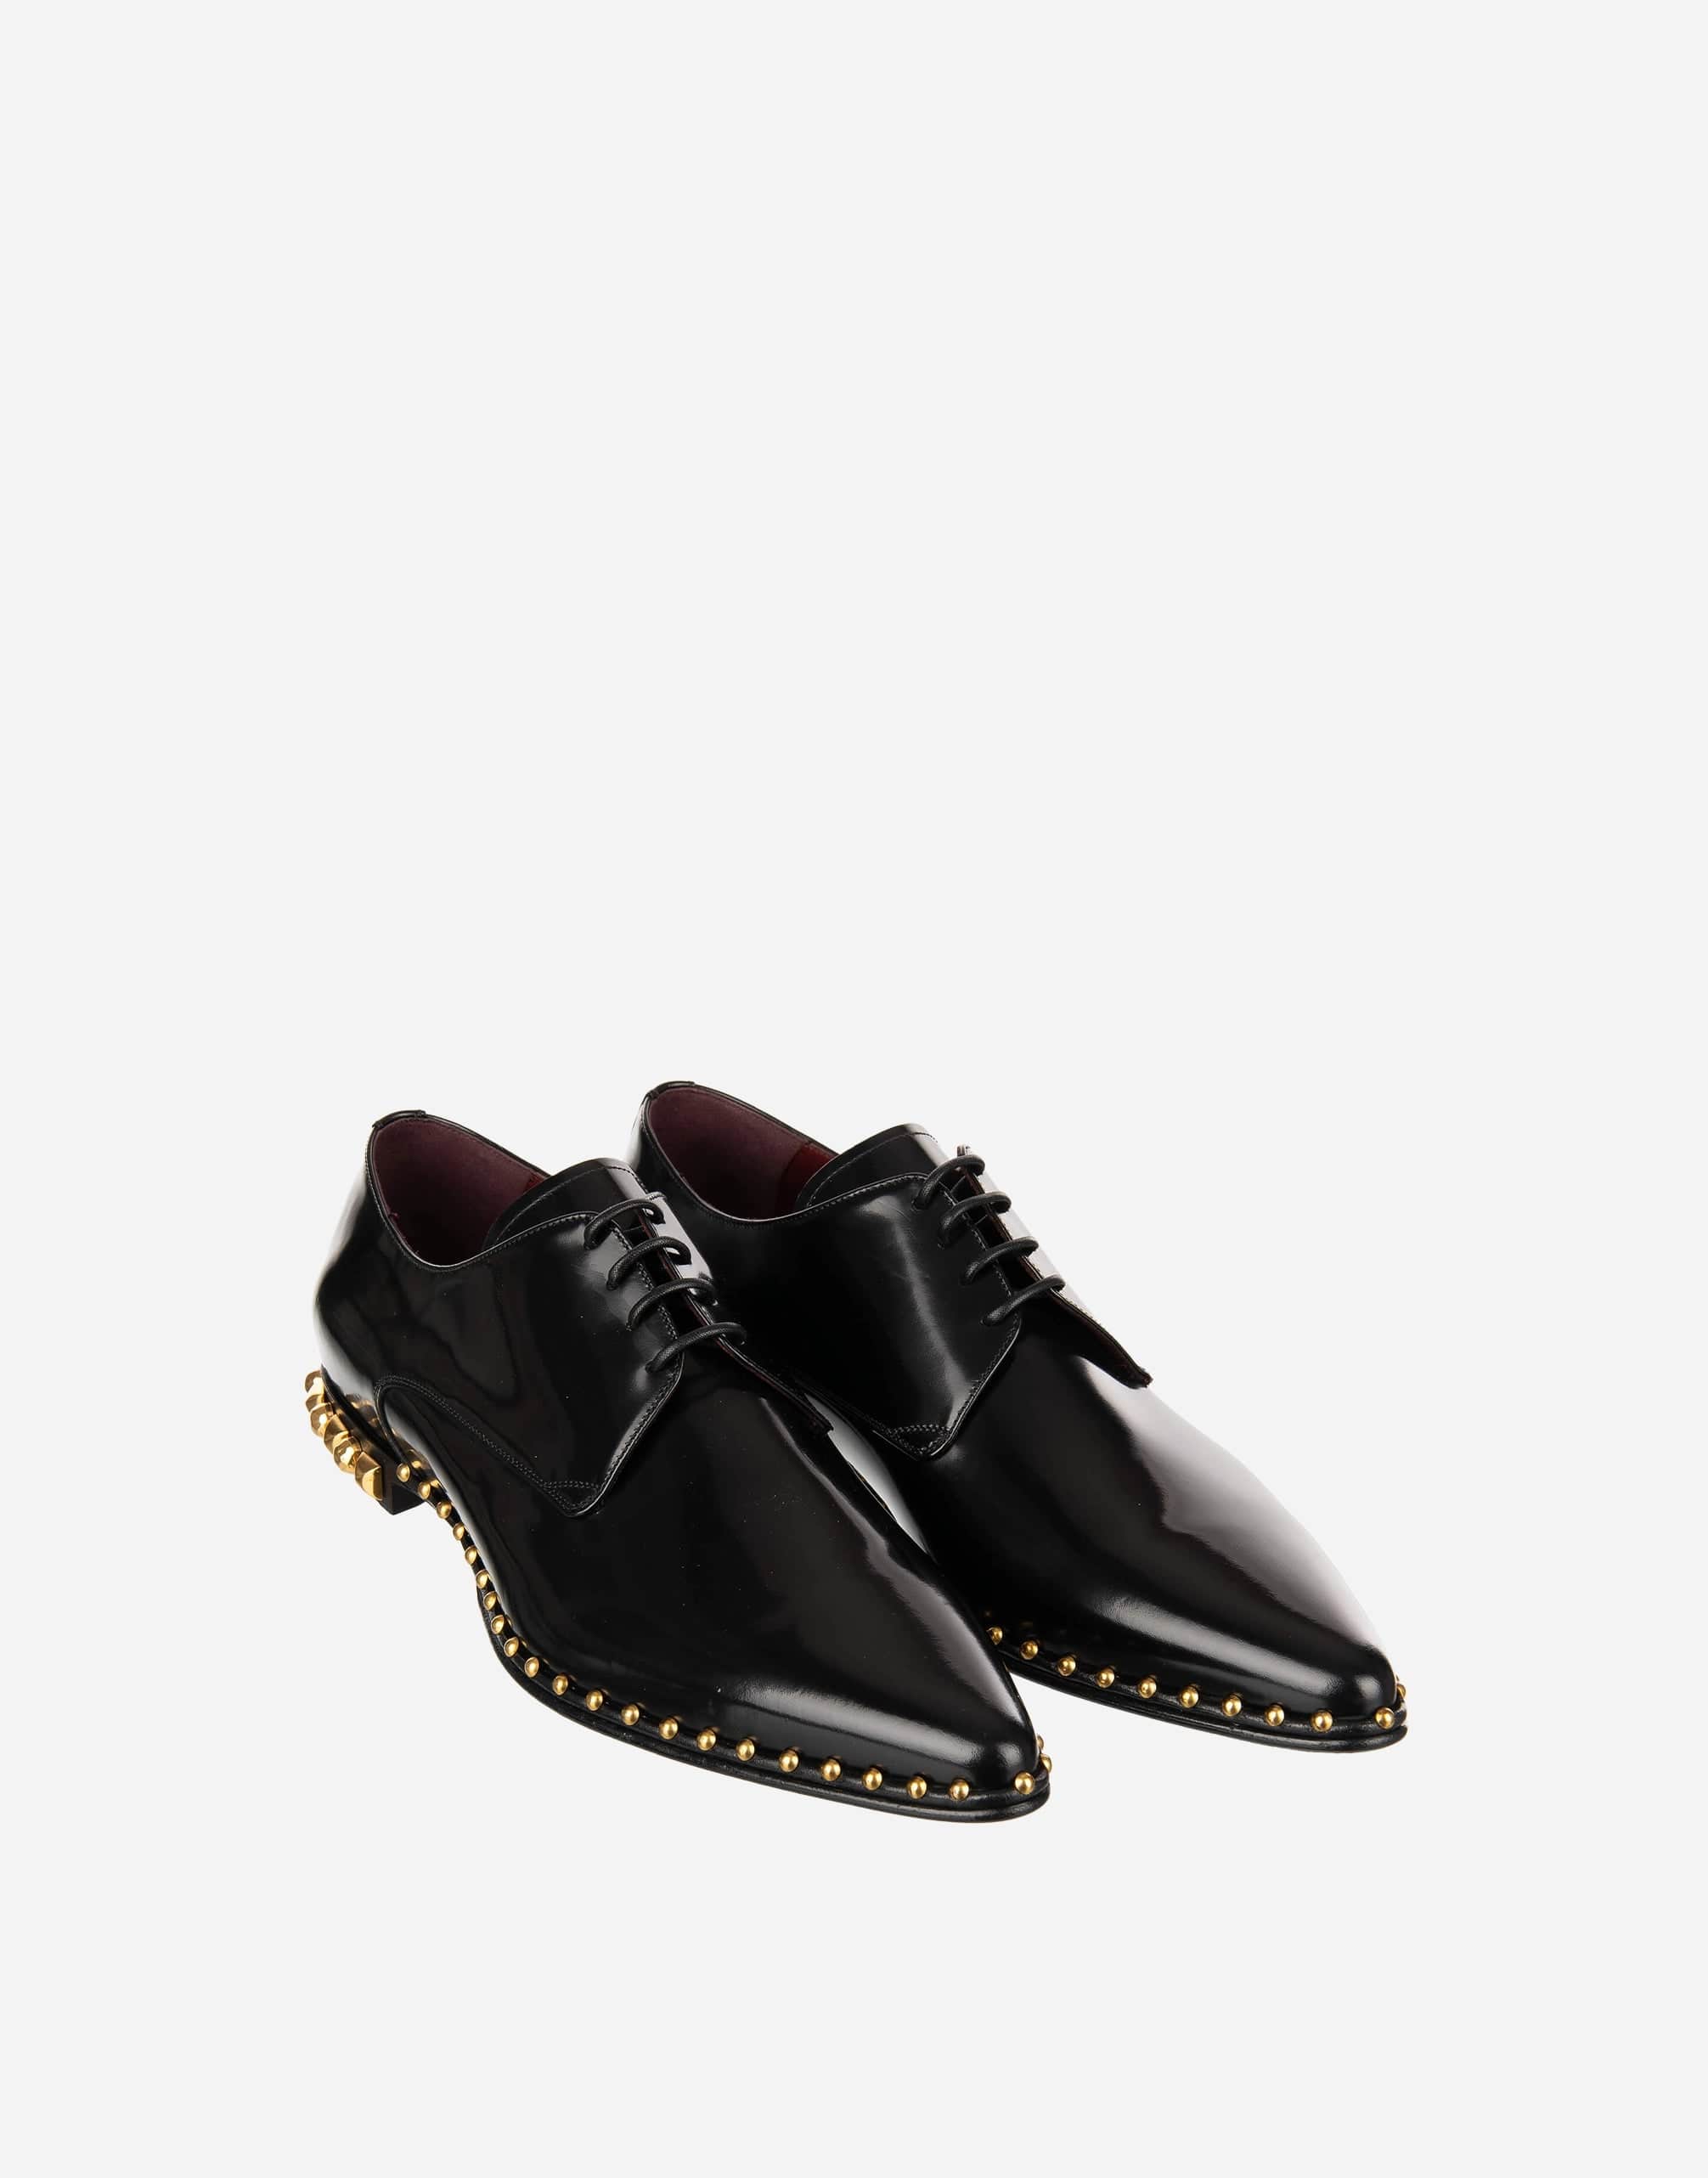 Dolce & Gabbana Millennials Studded Derby Shoes